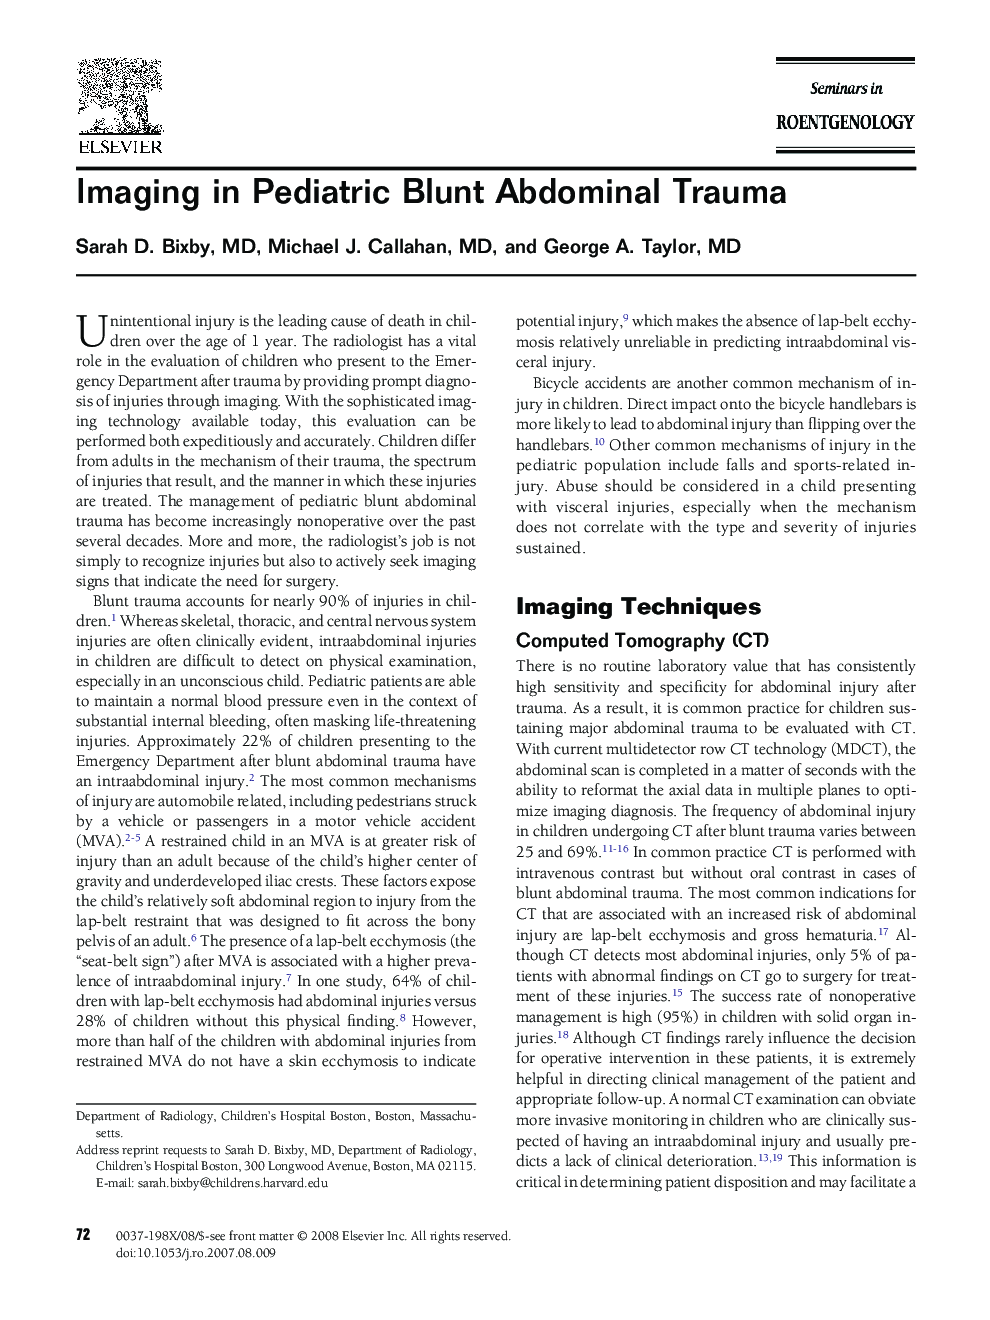 Imaging in Pediatric Blunt Abdominal Trauma